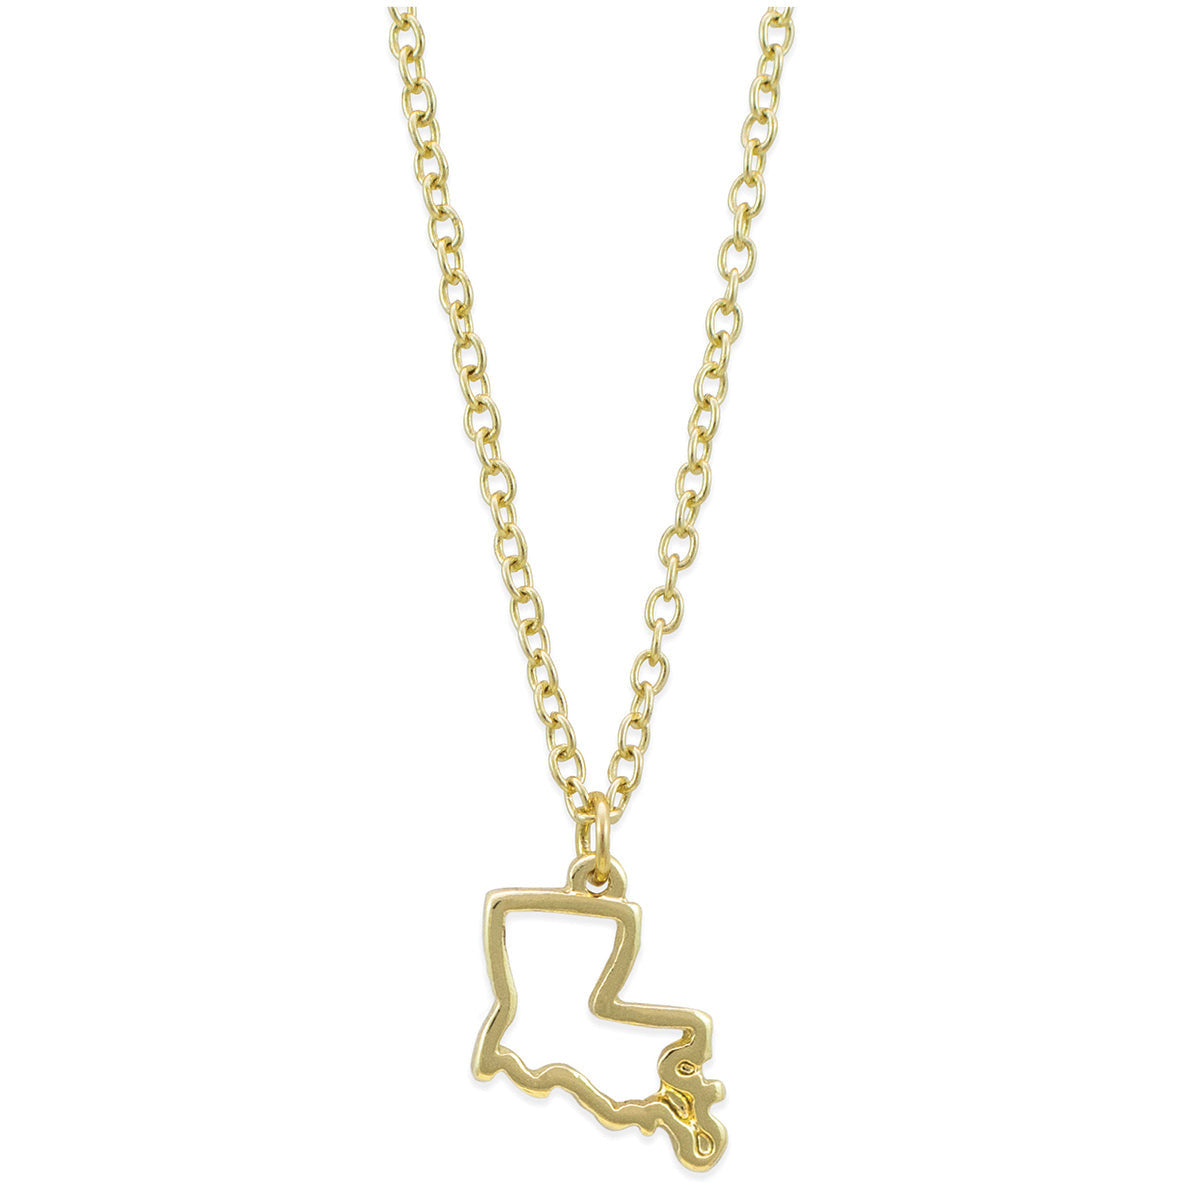 The Louisiana Love Necklace